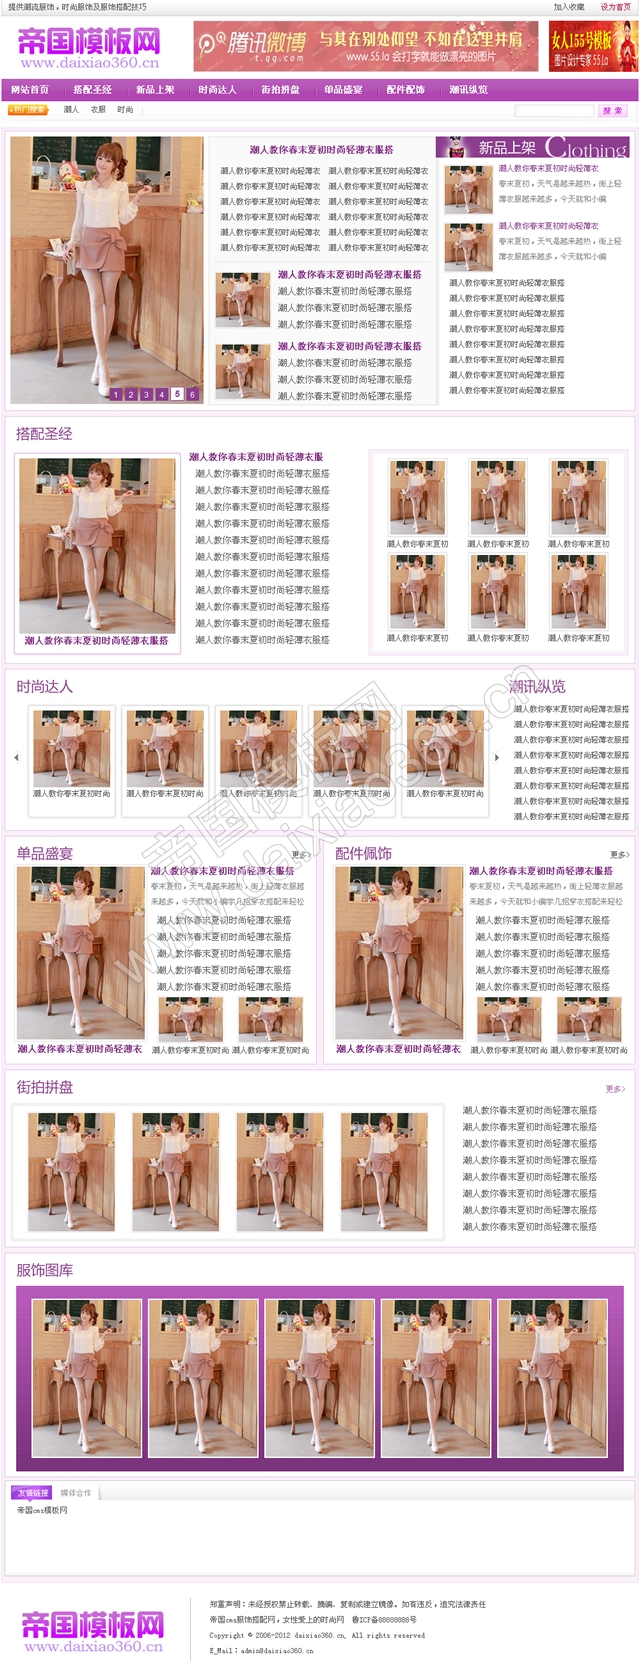 帝国cms紫色大气女性服饰搭配网站程序模板